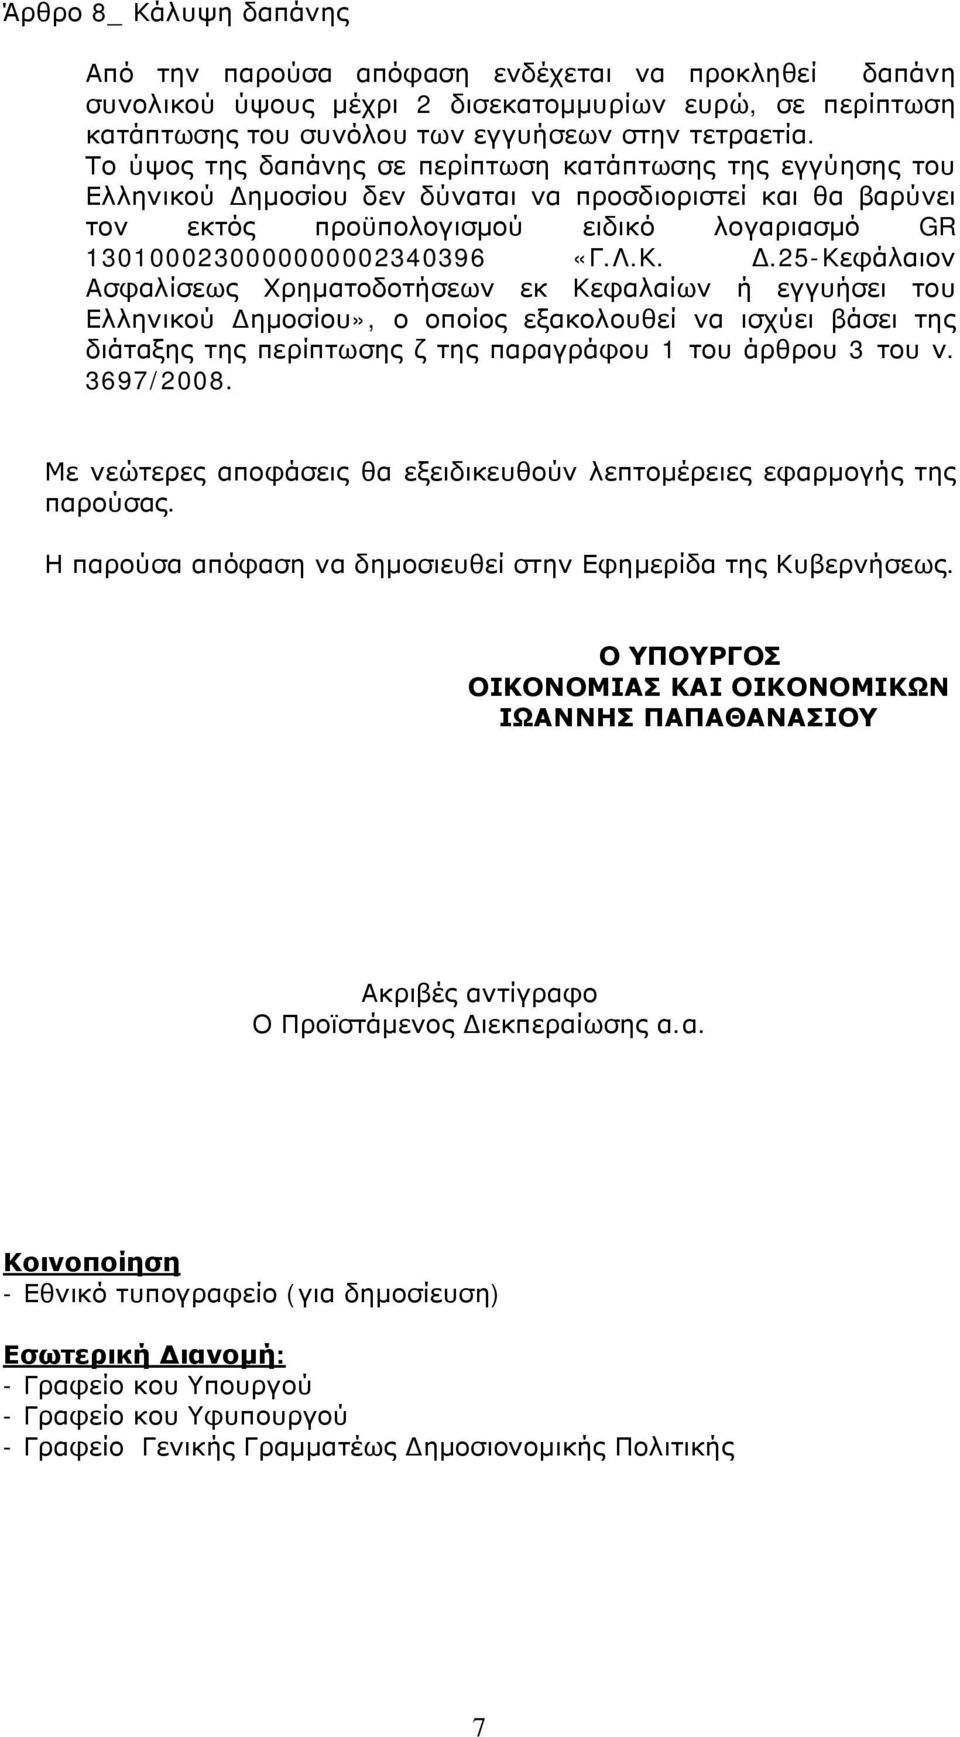 Λ.Κ. Δ.25-Κεφάλαιον Ασφαλίσεως Χρηματοδοτήσεων εκ Κεφαλαίων ή εγγυήσει του Ελληνικού Δημοσίου», ο οποίος εξακολουθεί να ισχύει βάσει της διάταξης της περίπτωσης ζ της παραγράφου 1 του άρθρου 3 του ν.